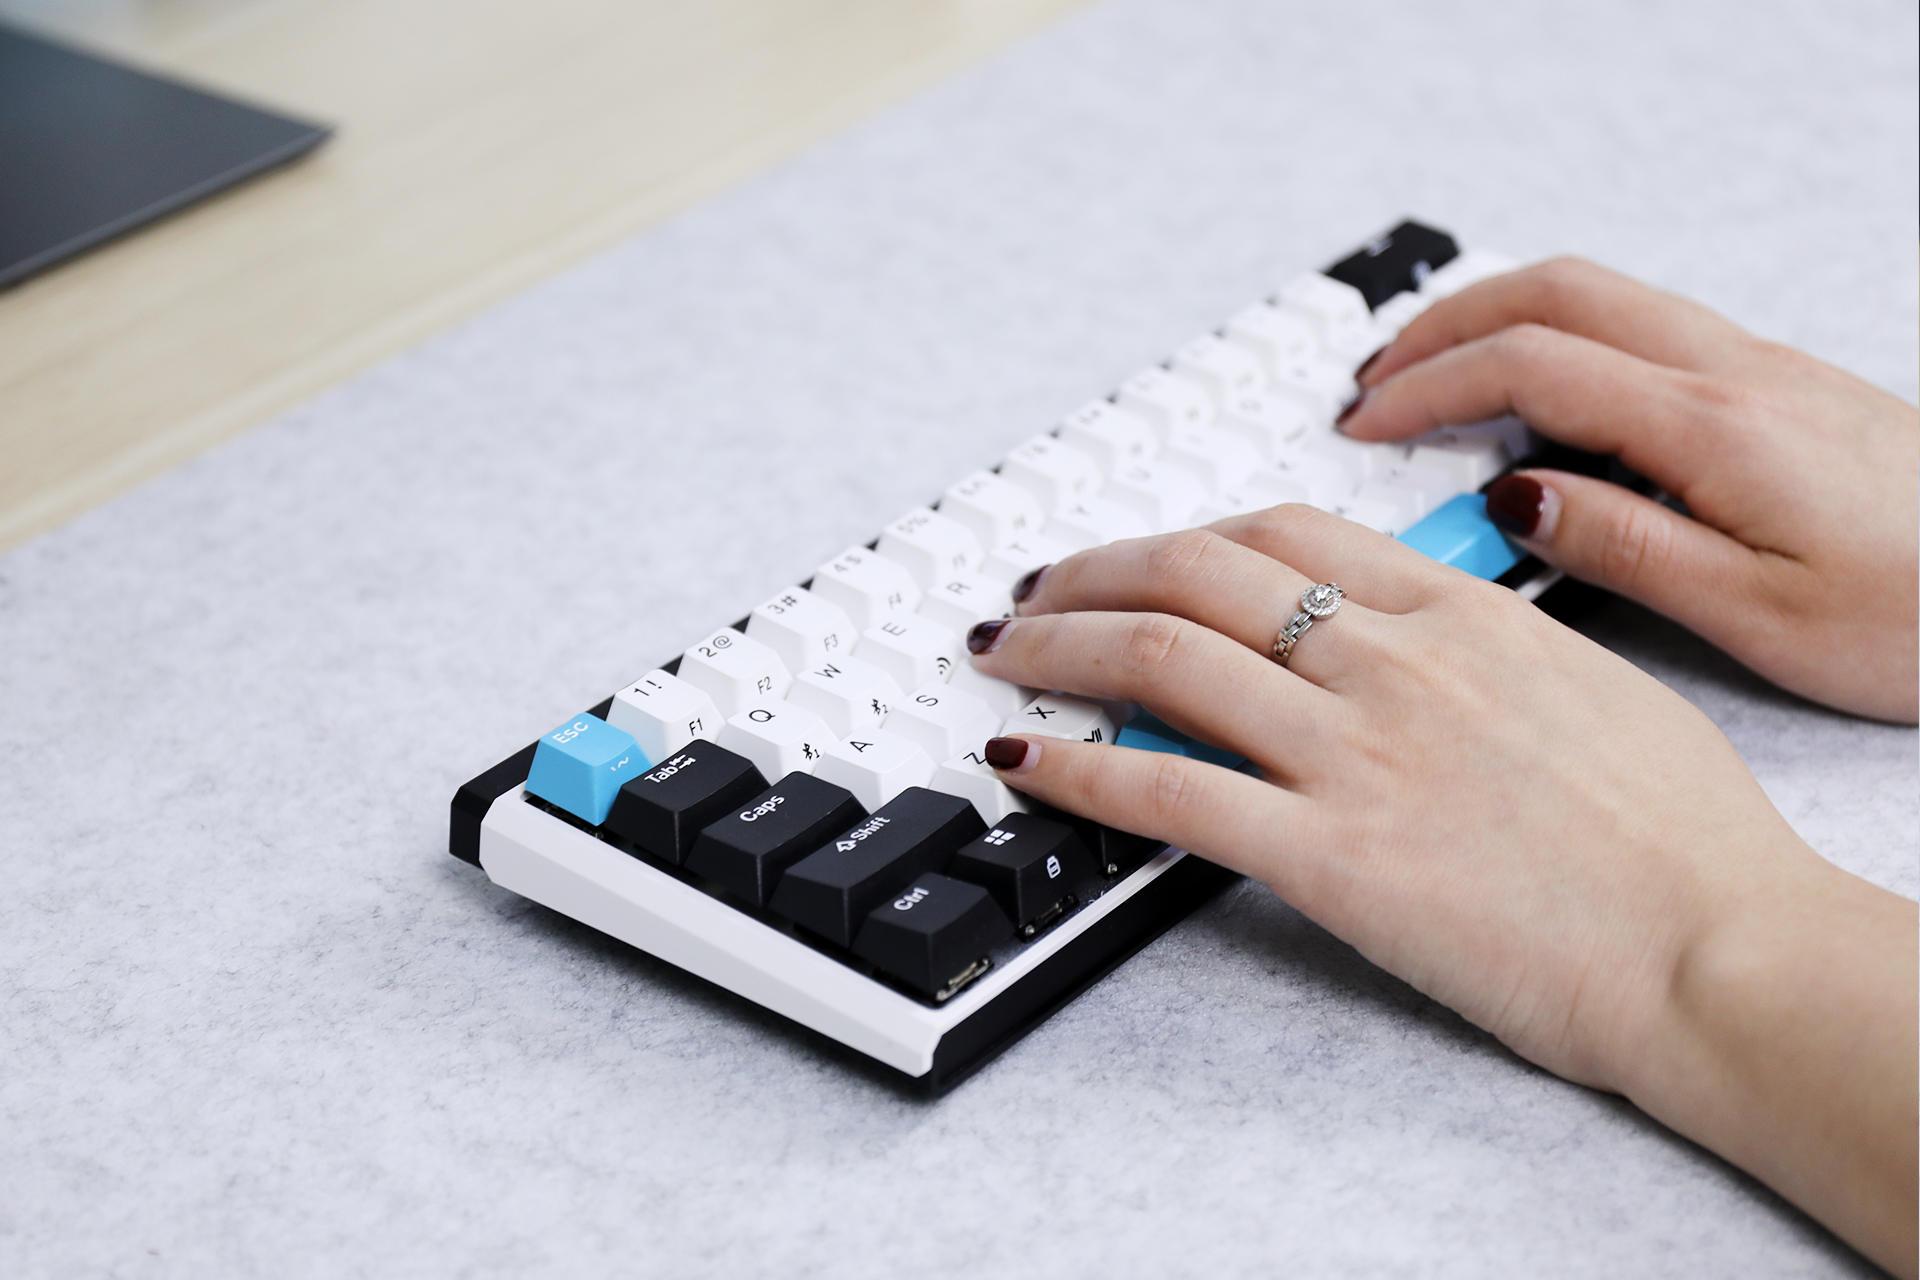 杜伽K330w Plus评测：小巧精致、手感一流的热插拔机械键盘